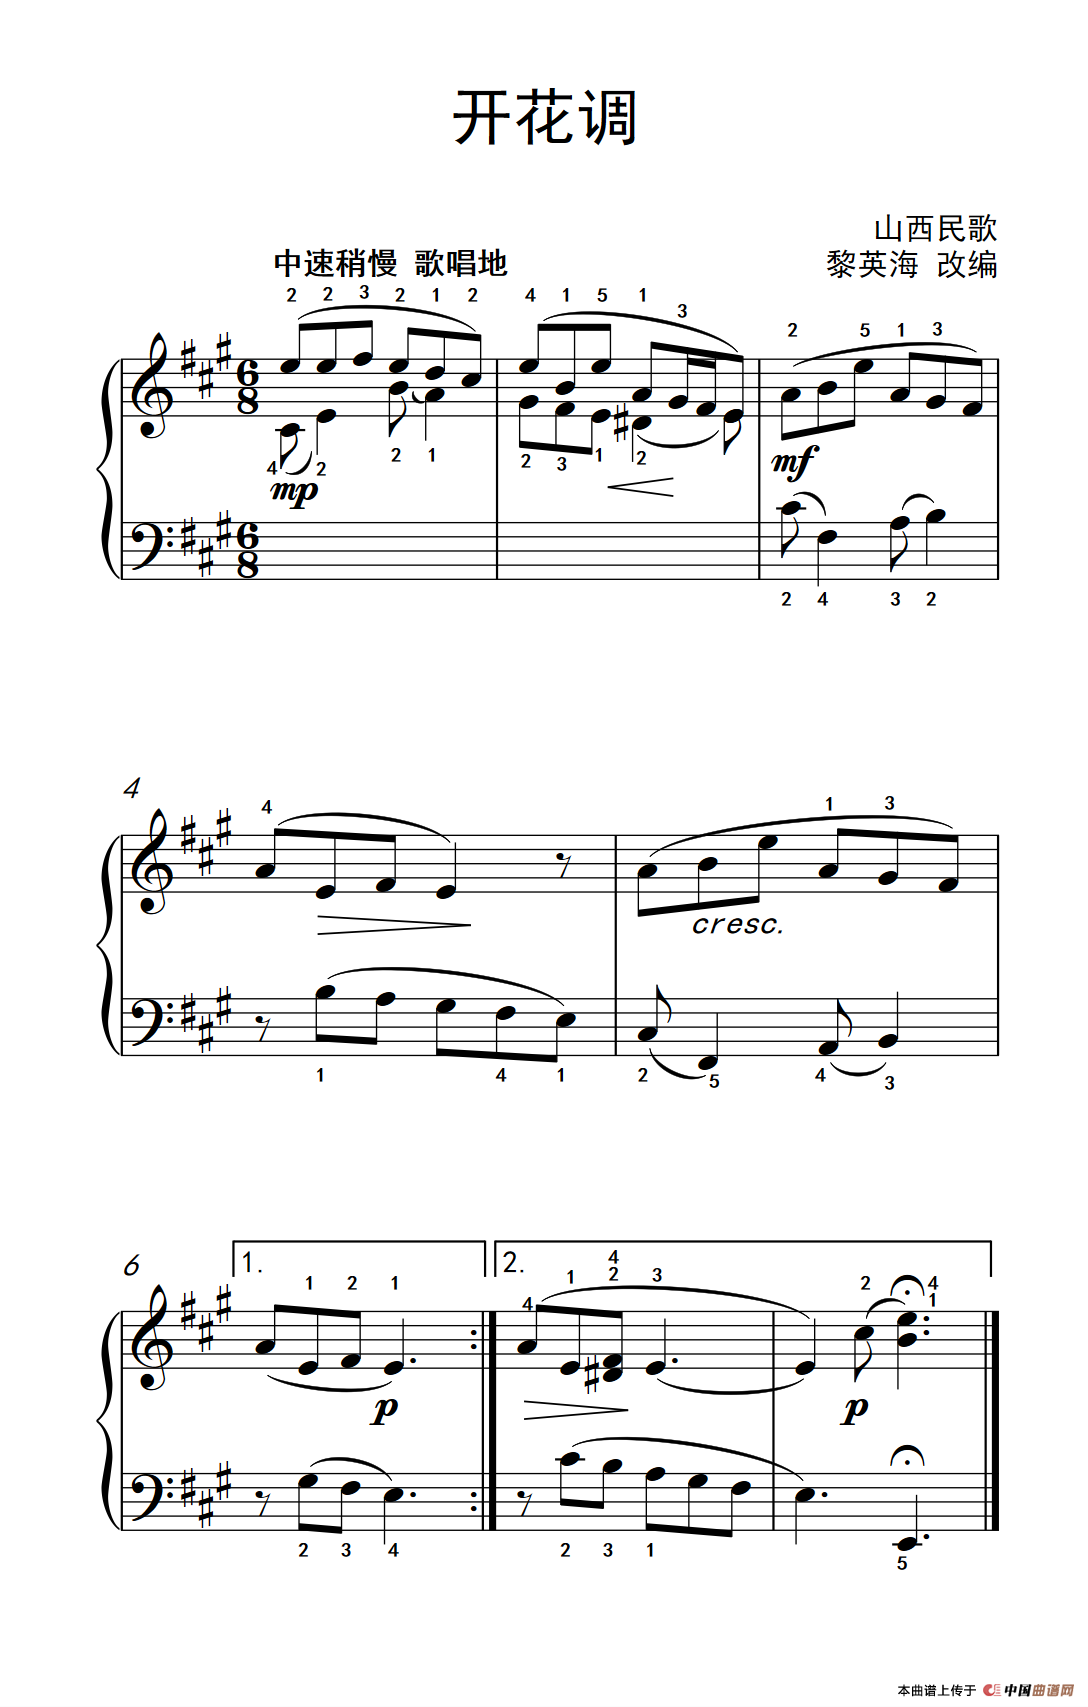 《开花调》钢琴曲谱图分享